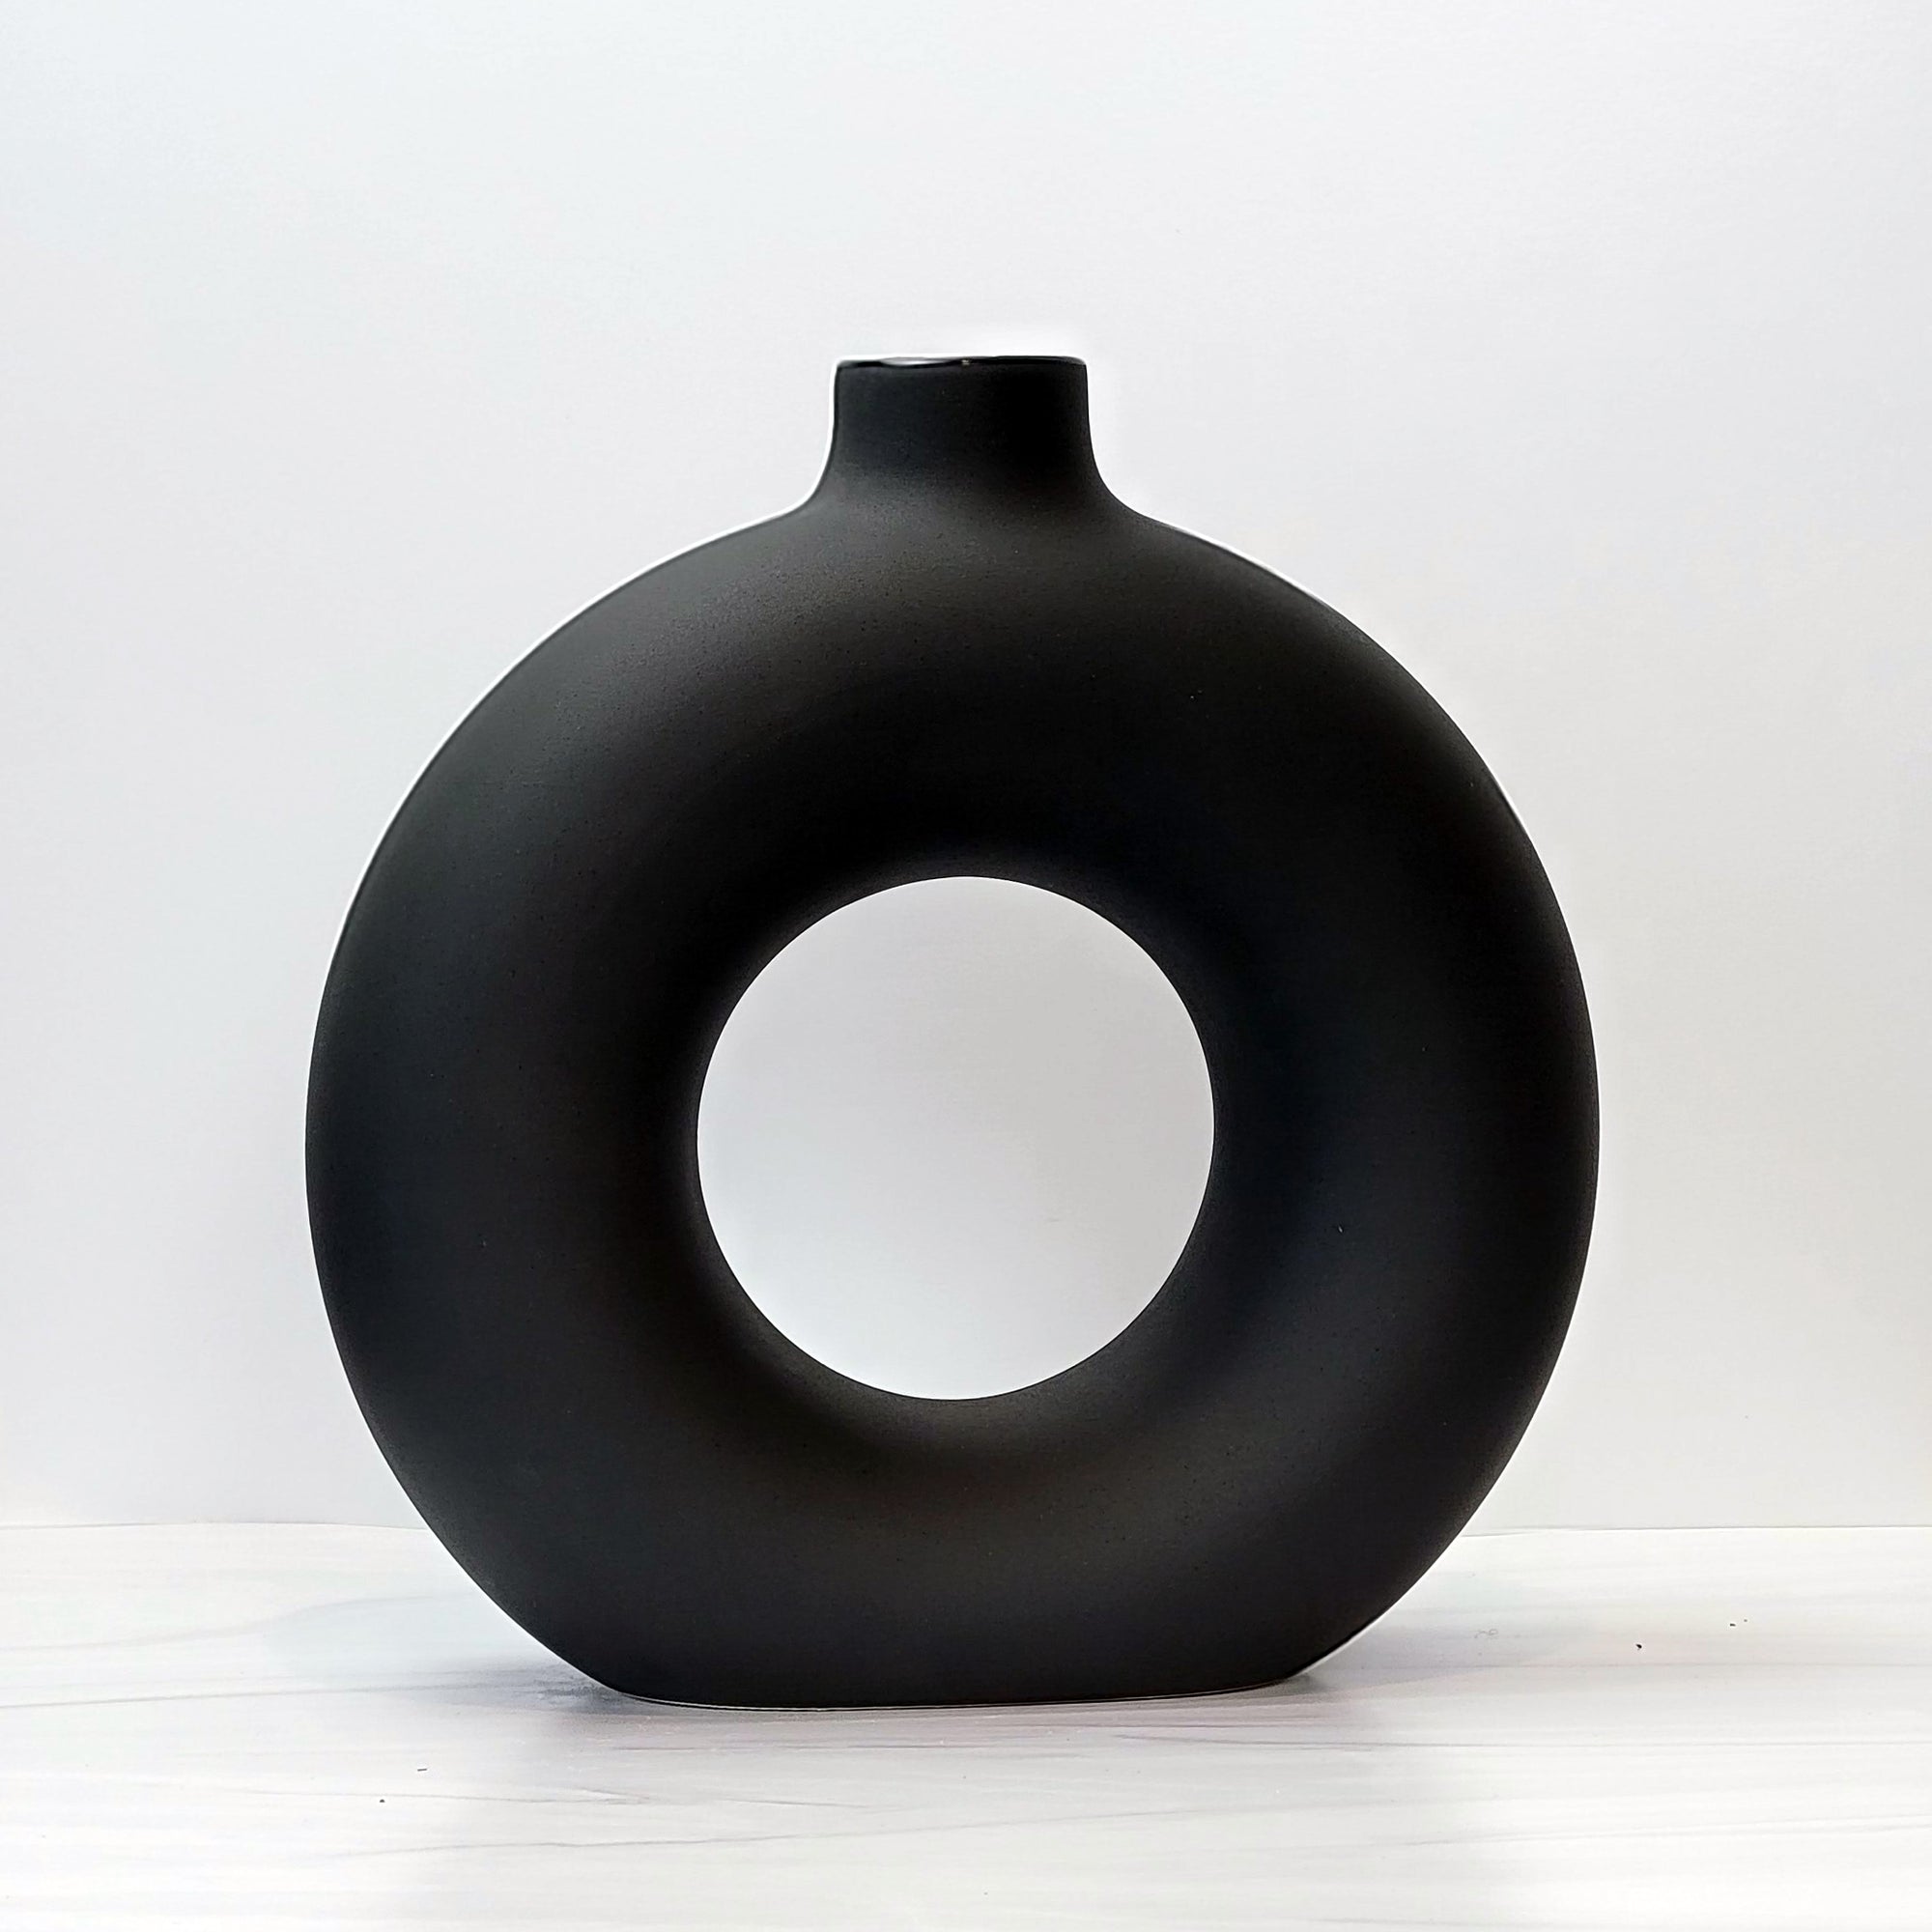 Large black doughnut-shaped Otto vase.